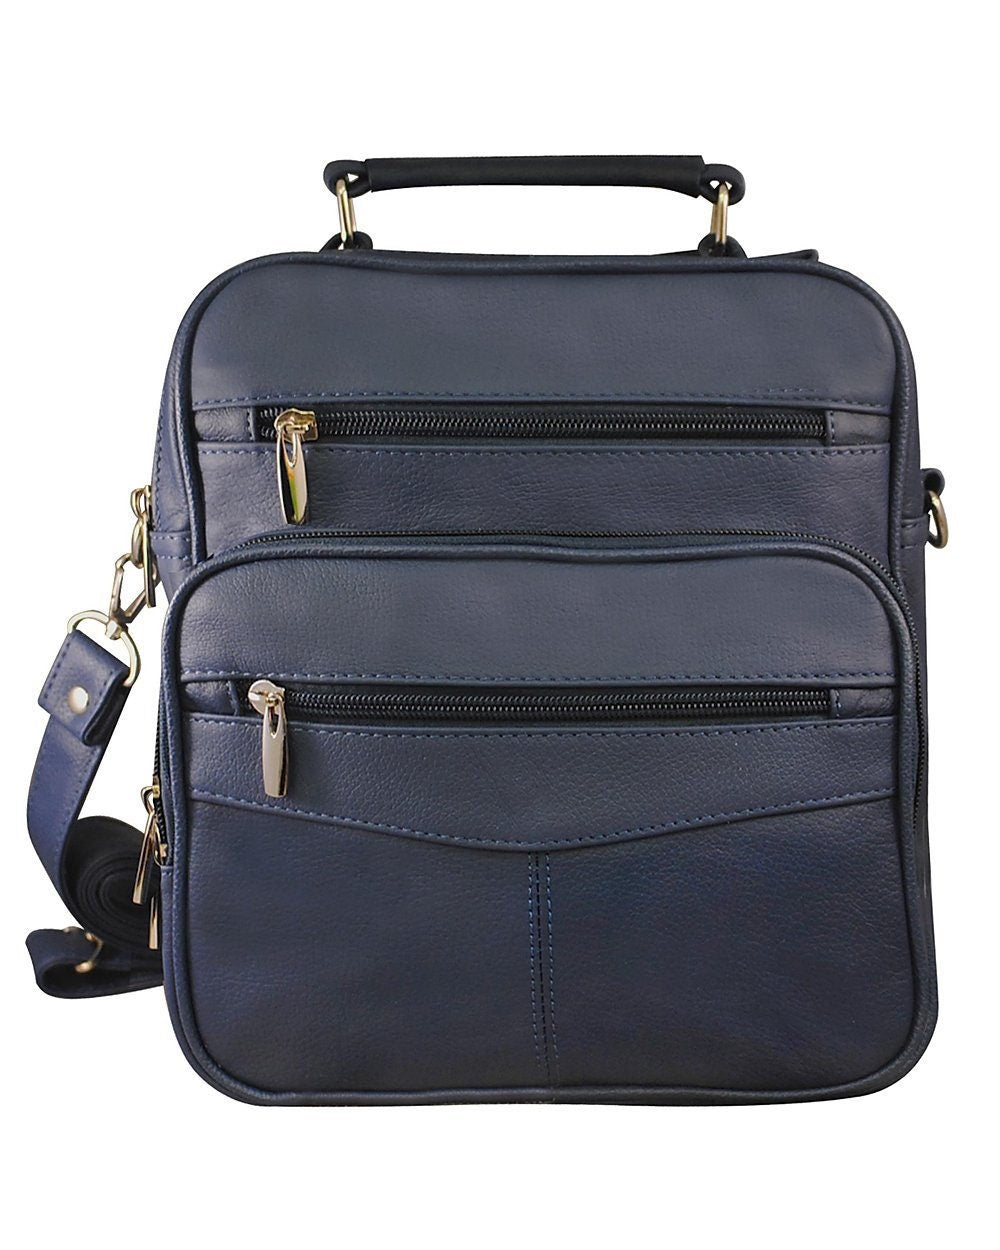 Men's Leather Crossbody Messenger Shoulder Bag Briefcase Satchel Handbag Tablet Bottle Holder